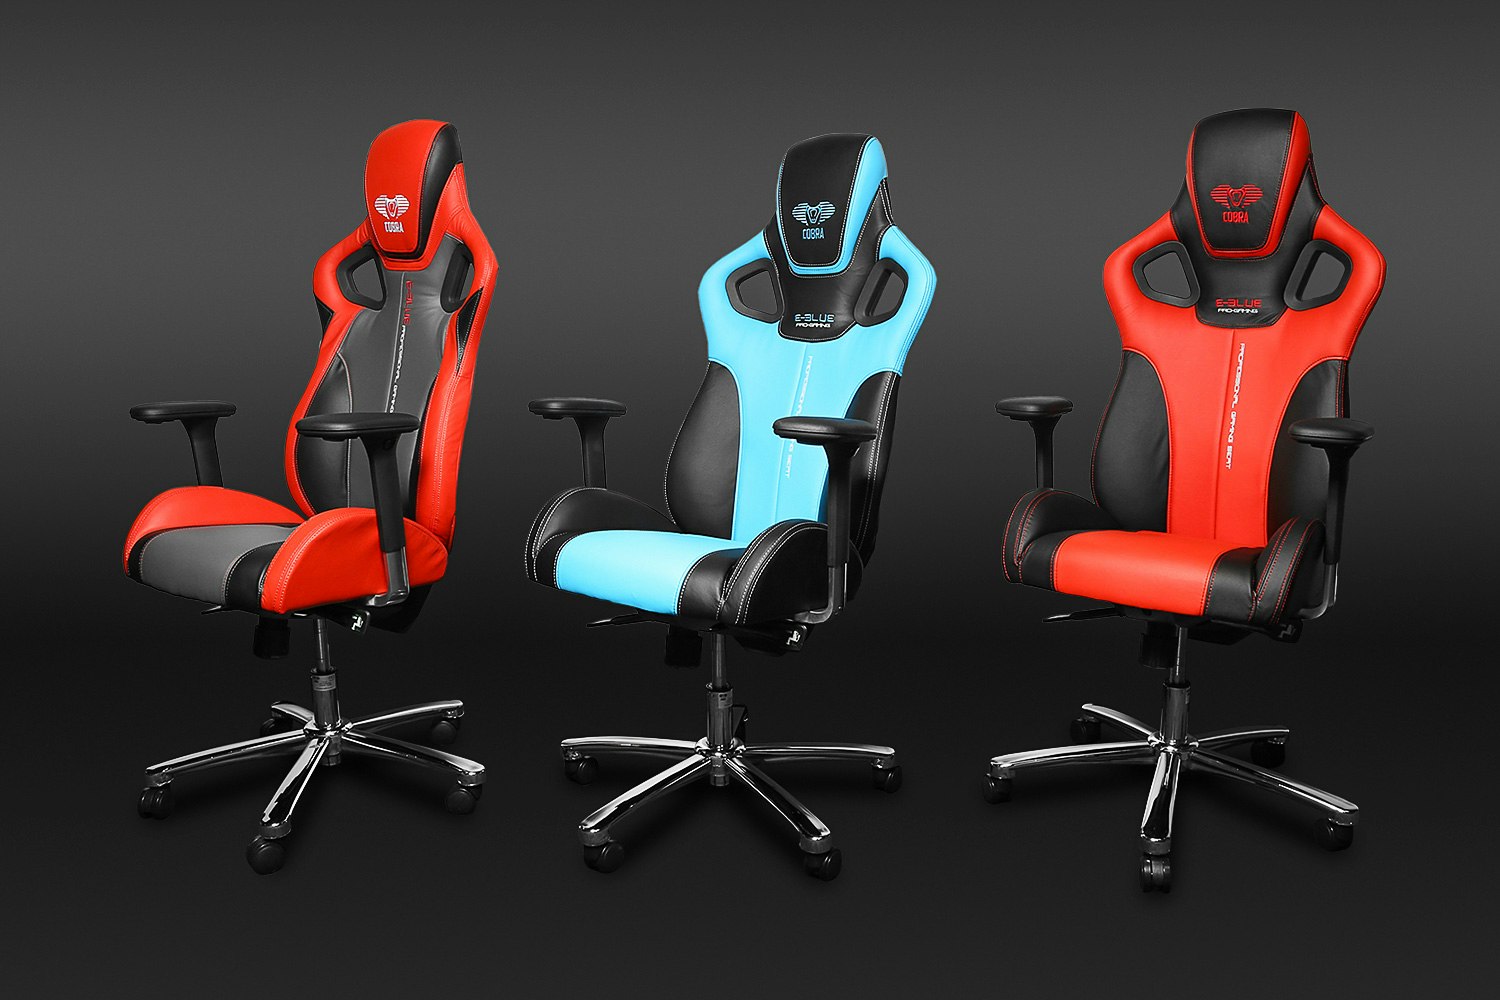 Gaming cobra. Игровое кресло Кобра. E-Blue Cobra кресло. E-Blue professional Gaming Seat Cobra офисный стул.